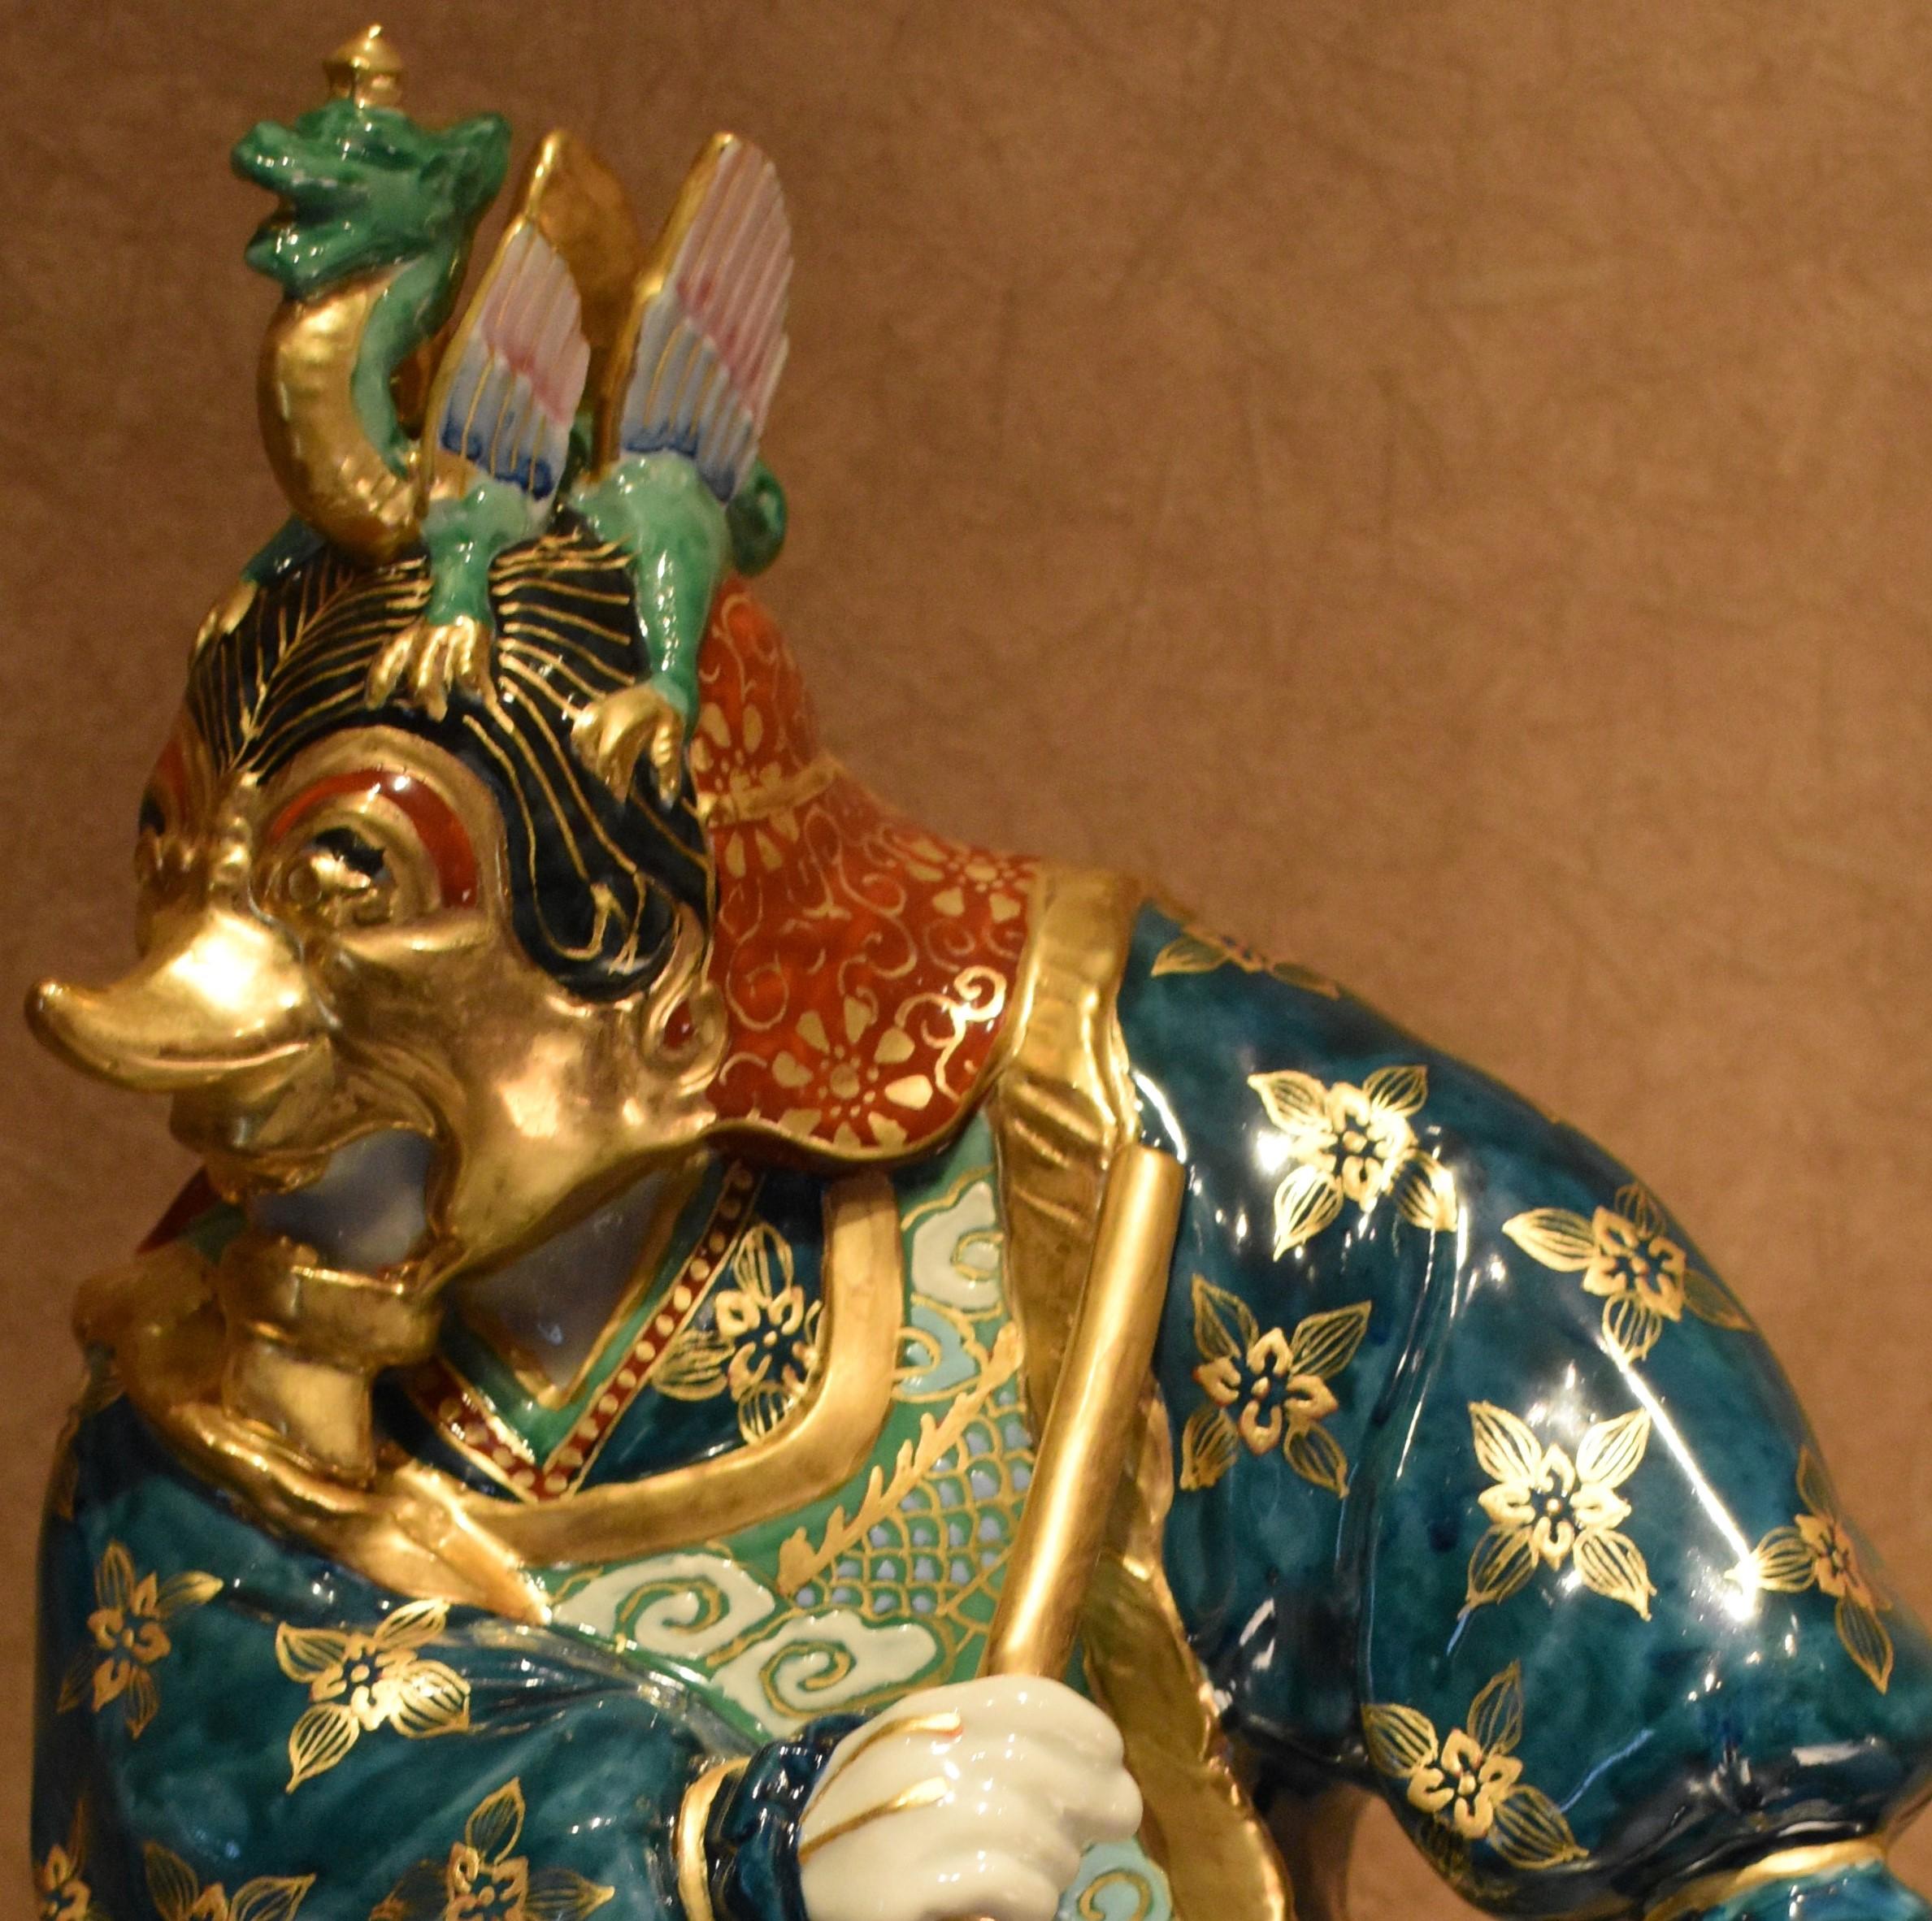 Figurine unique en porcelaine du prince Lanling, héros-guerrier du VIe siècle, Chine. Cette figurine aux détails complexes est la création d'un maître artiste de la porcelaine très respecté de la région de Kutani au Japon. Recréant fidèlement les